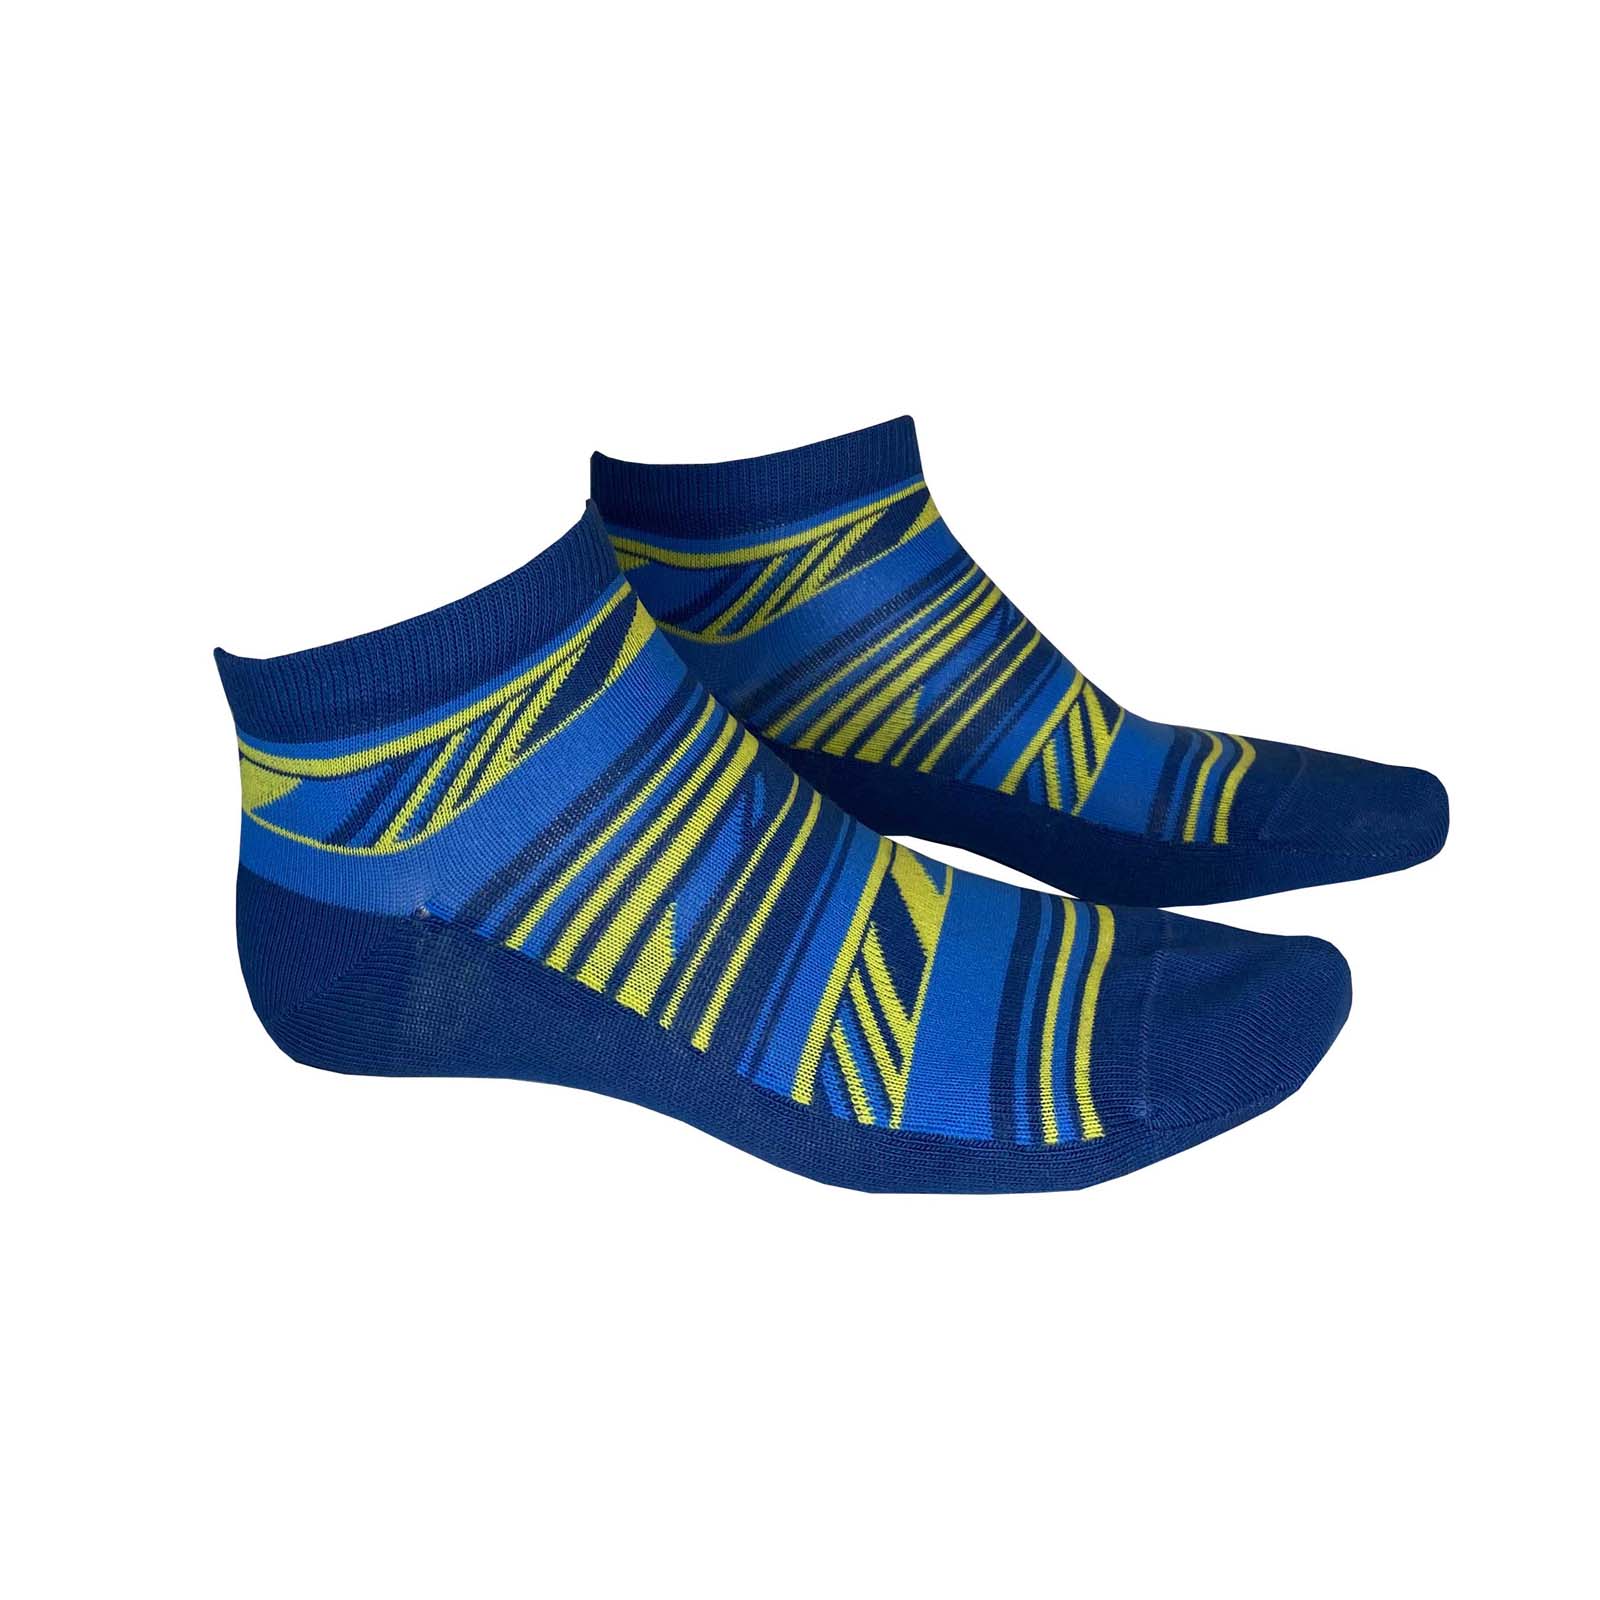 HUDSON Herren FLOW -  39/42 - Herren Sneaker Socken mit gestreiften Ethno-Elementen - Dodger (Blau)